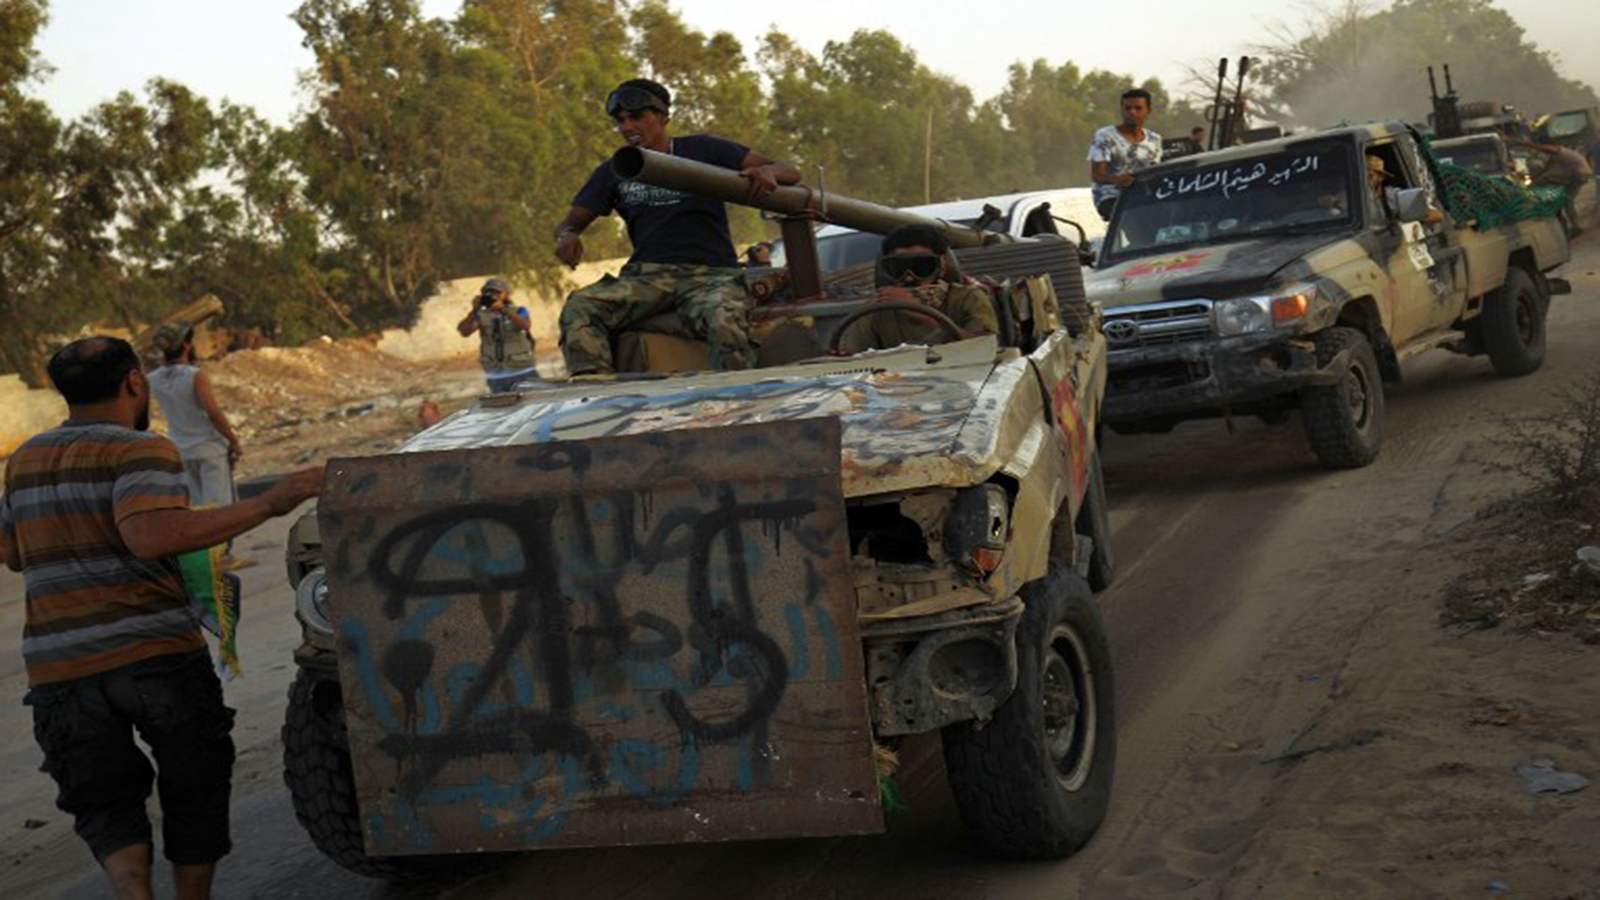 ليبيا ما قبل الثورة:معركة الجفرة وإطلاق سيف الاسلام القذافي